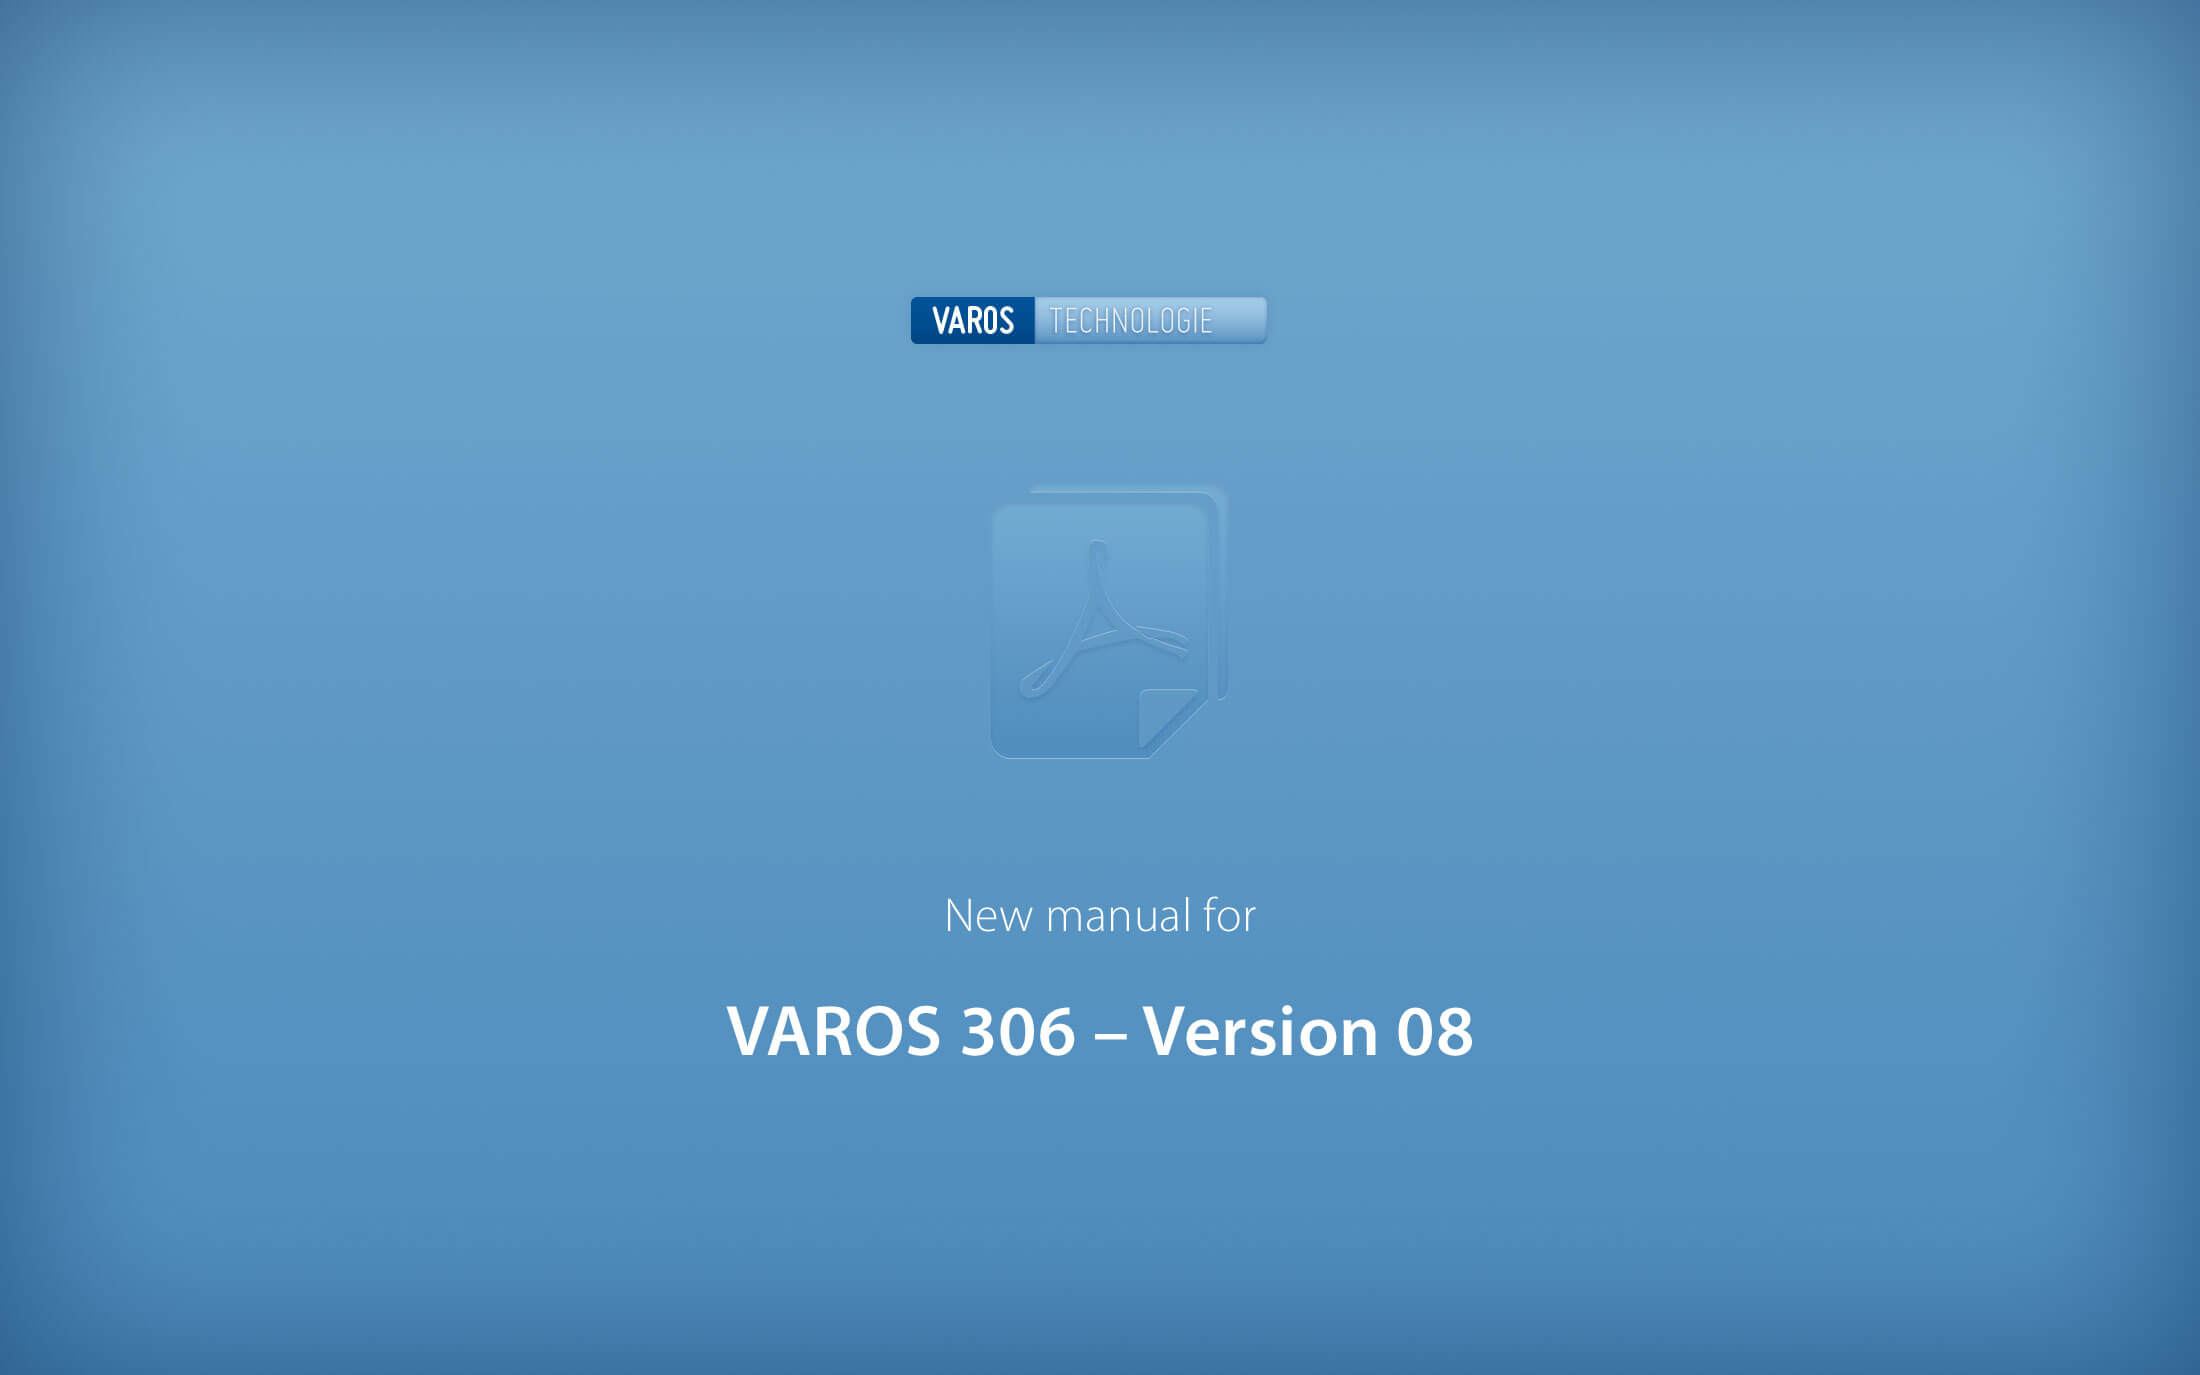 KWS-Electronic VAROS 306: new manual version 08